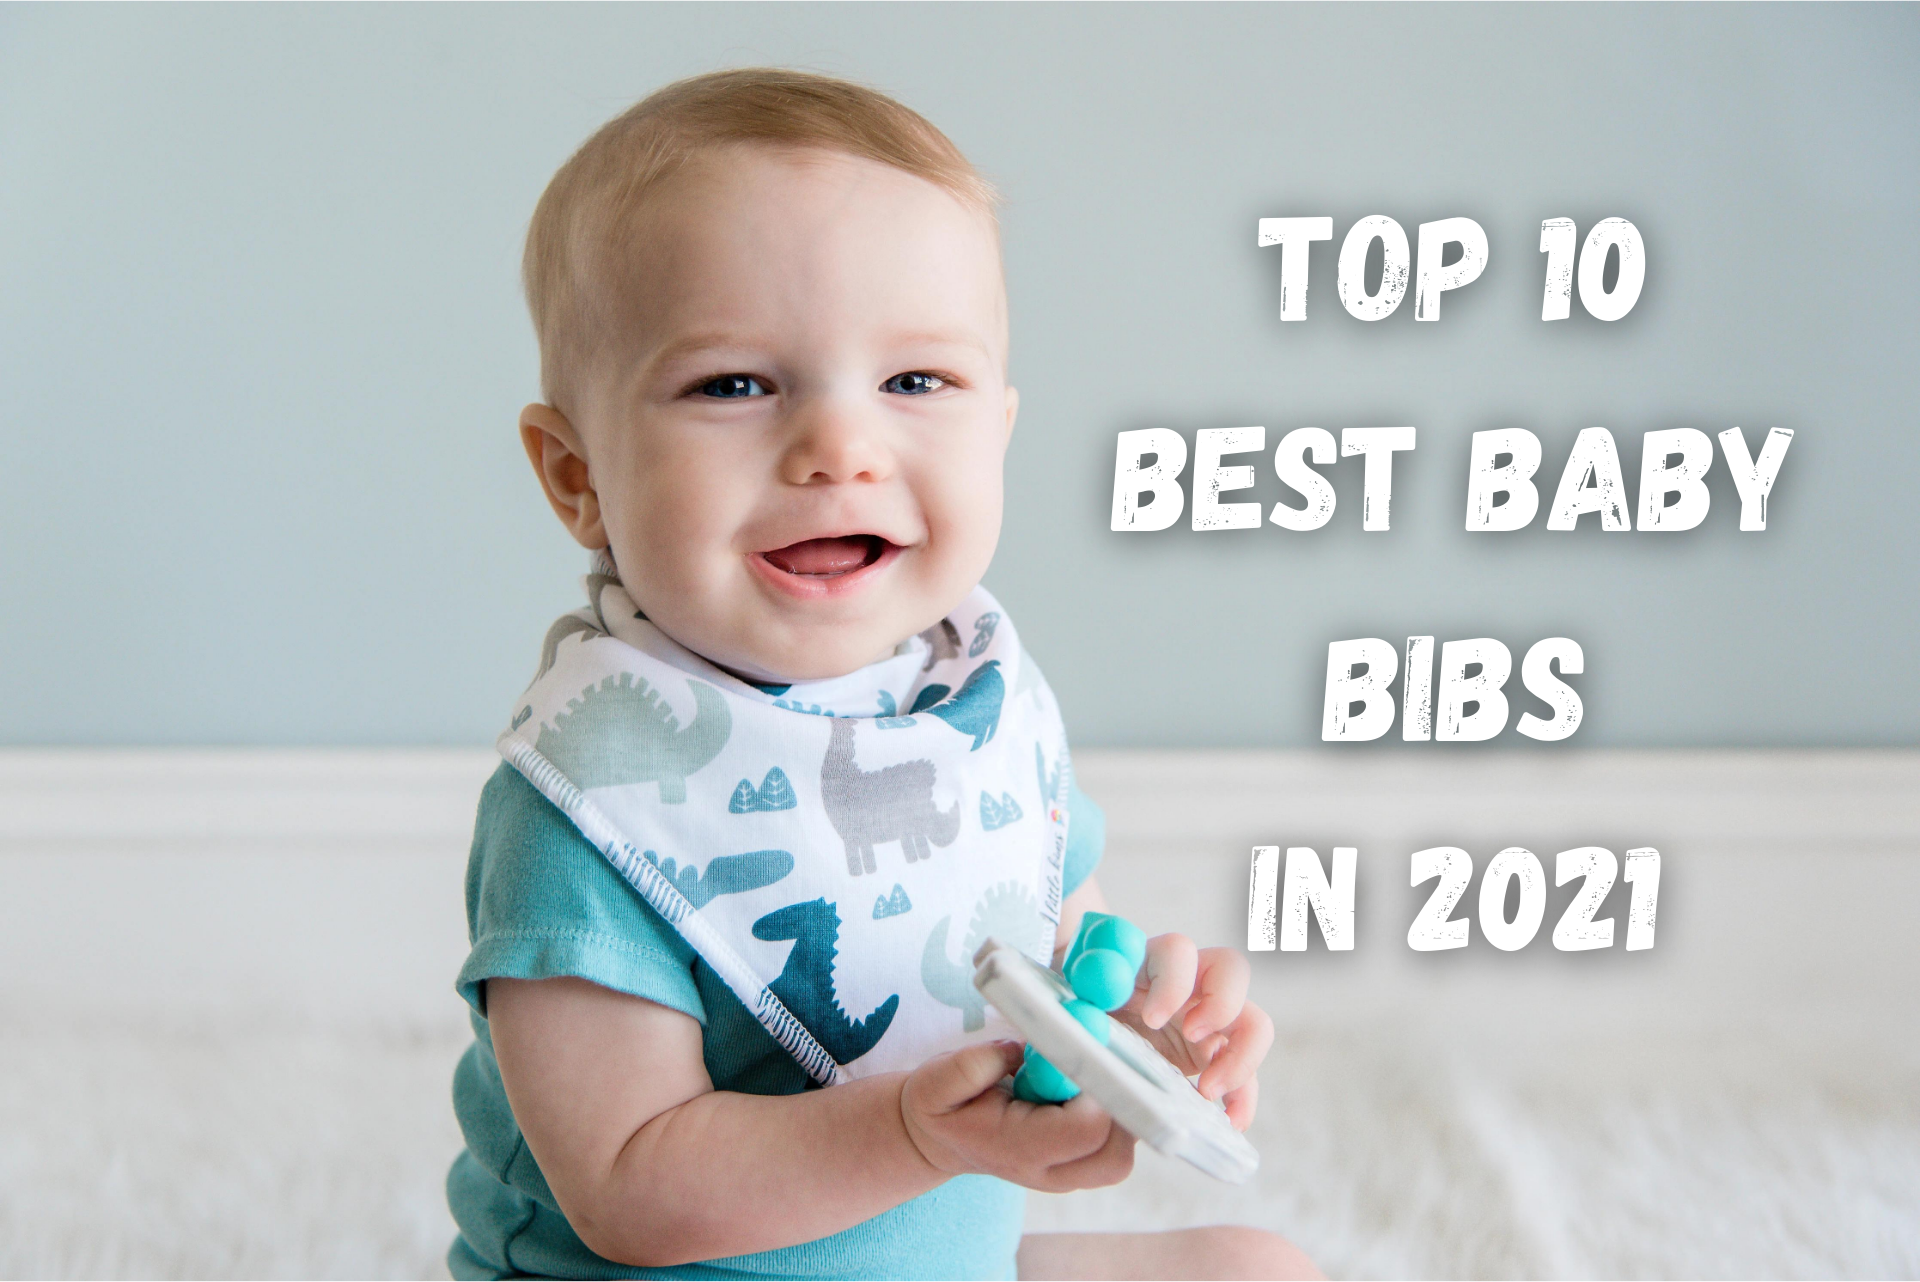 TOP 10 BEST BABY BIBS IN 2021